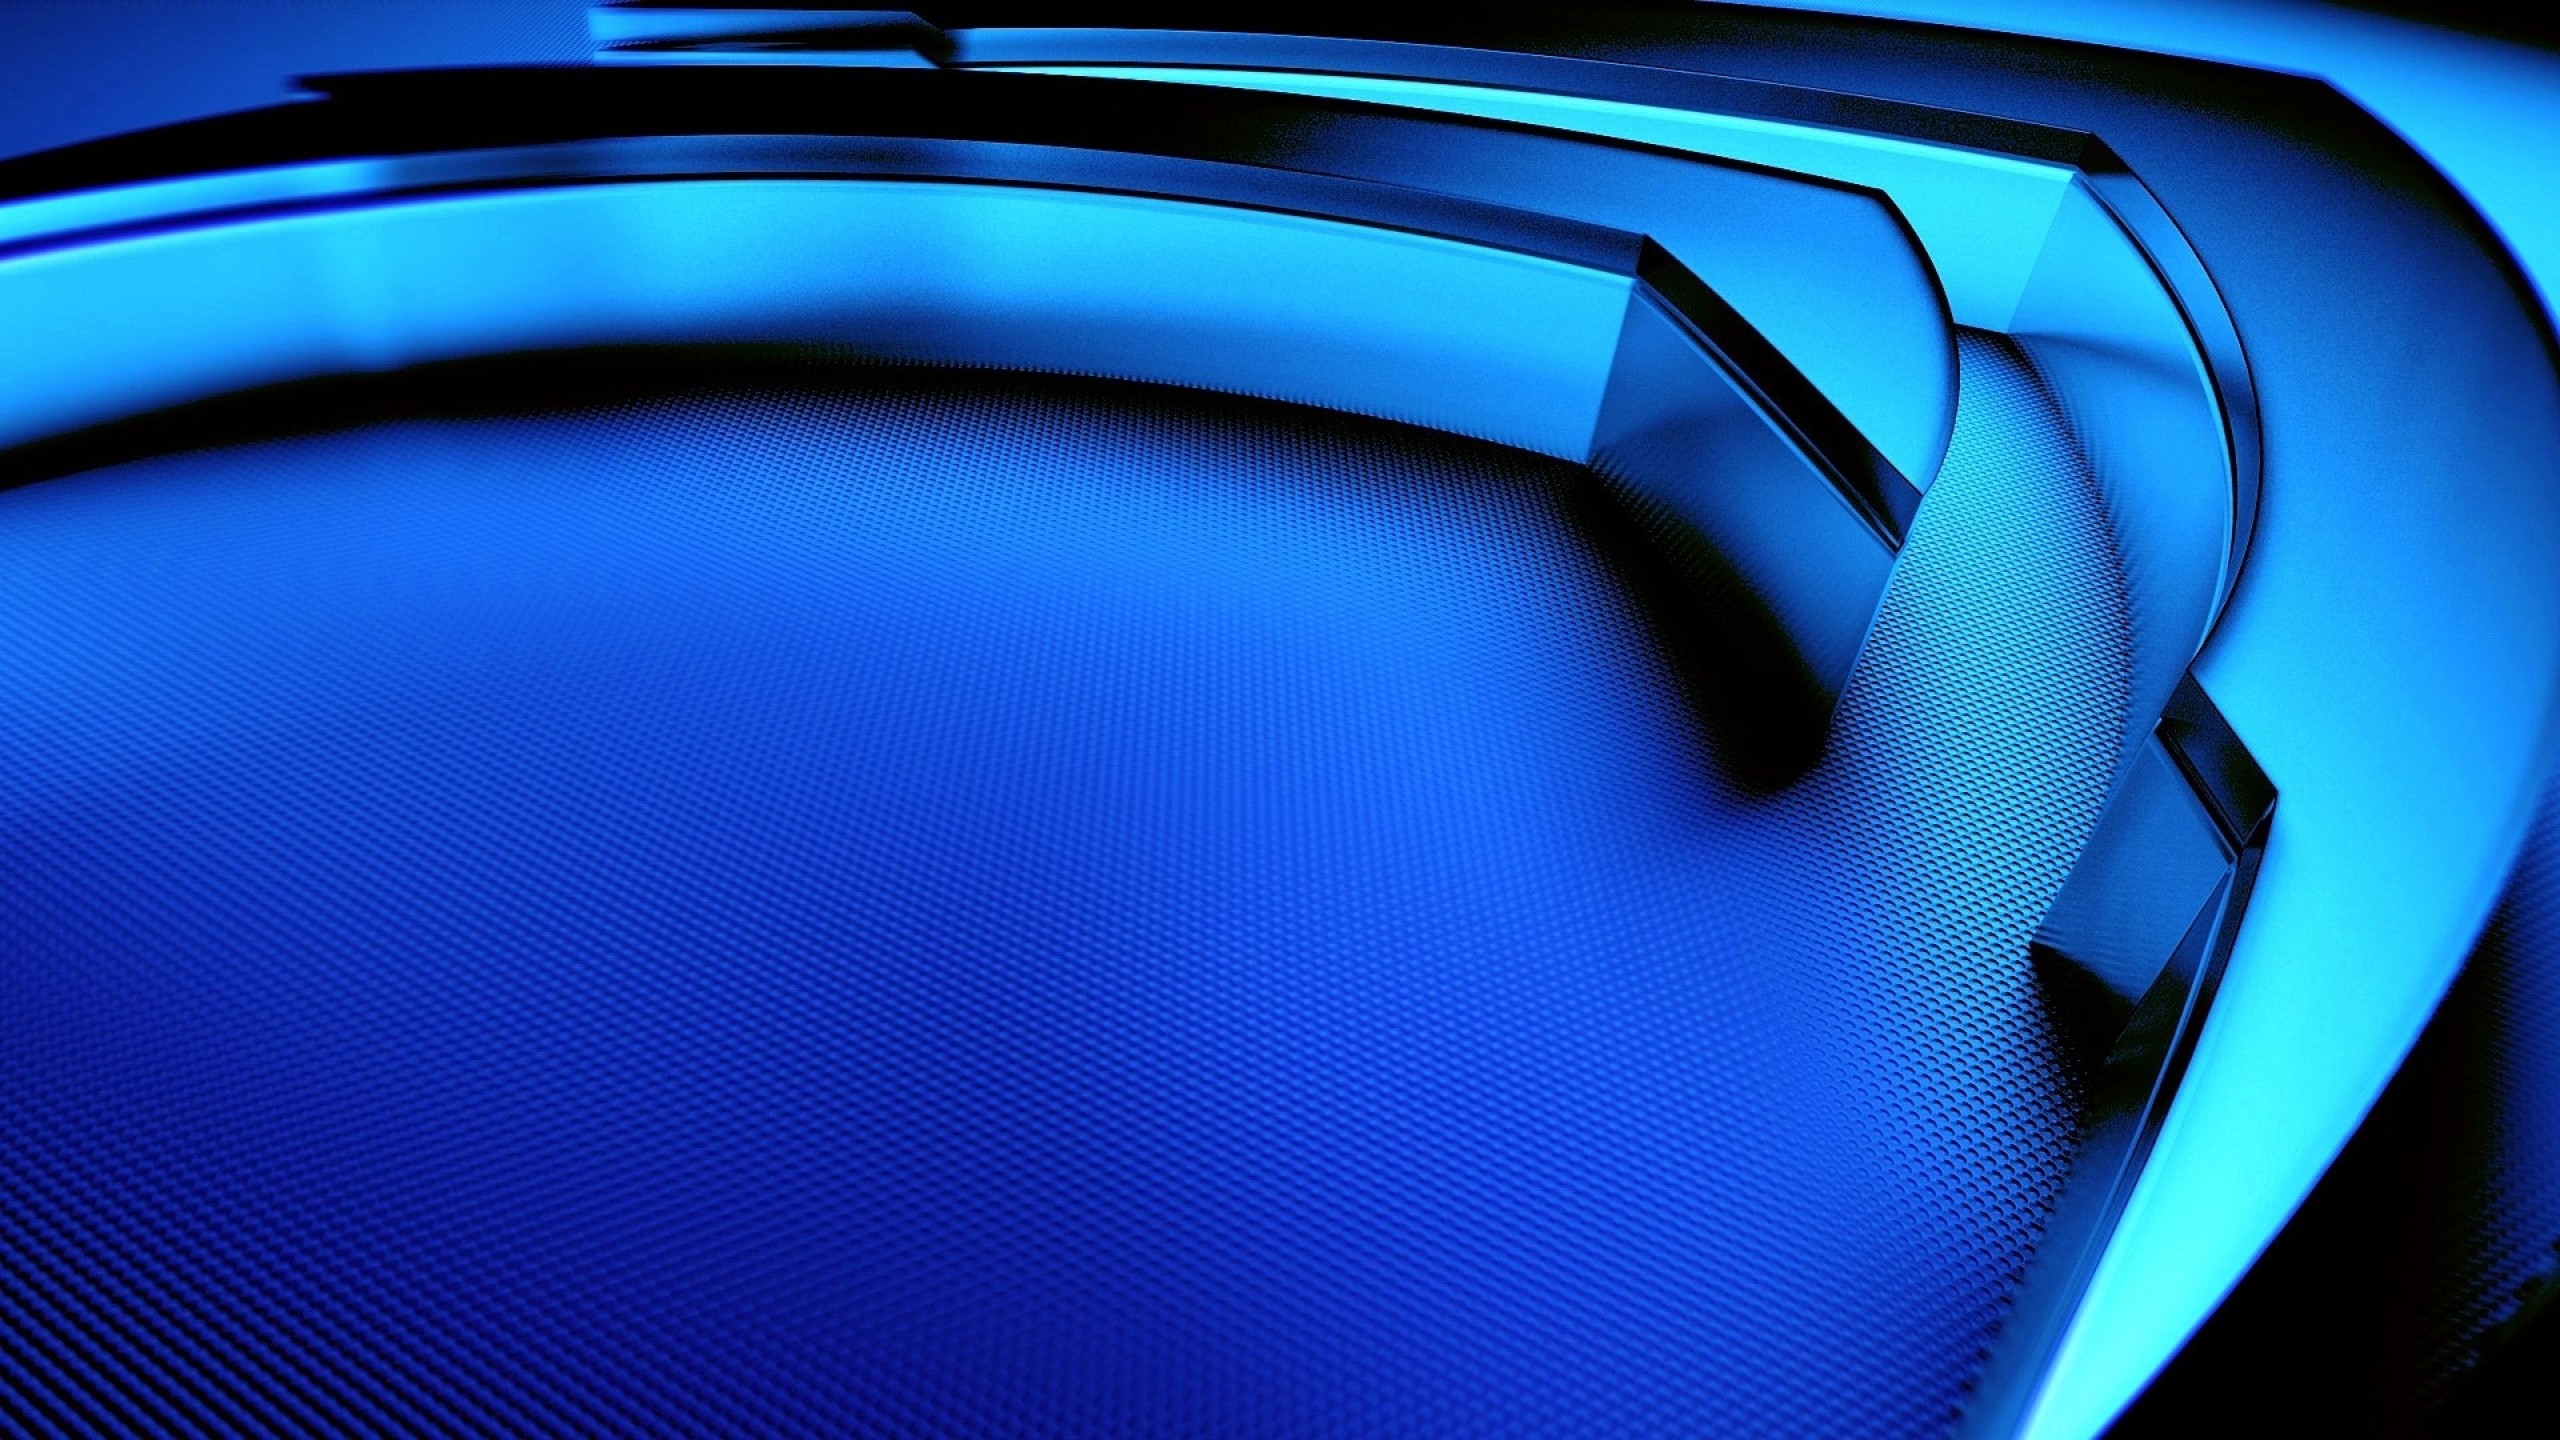 General 2560x1440 Nvidia blue shadow minimalism digital art